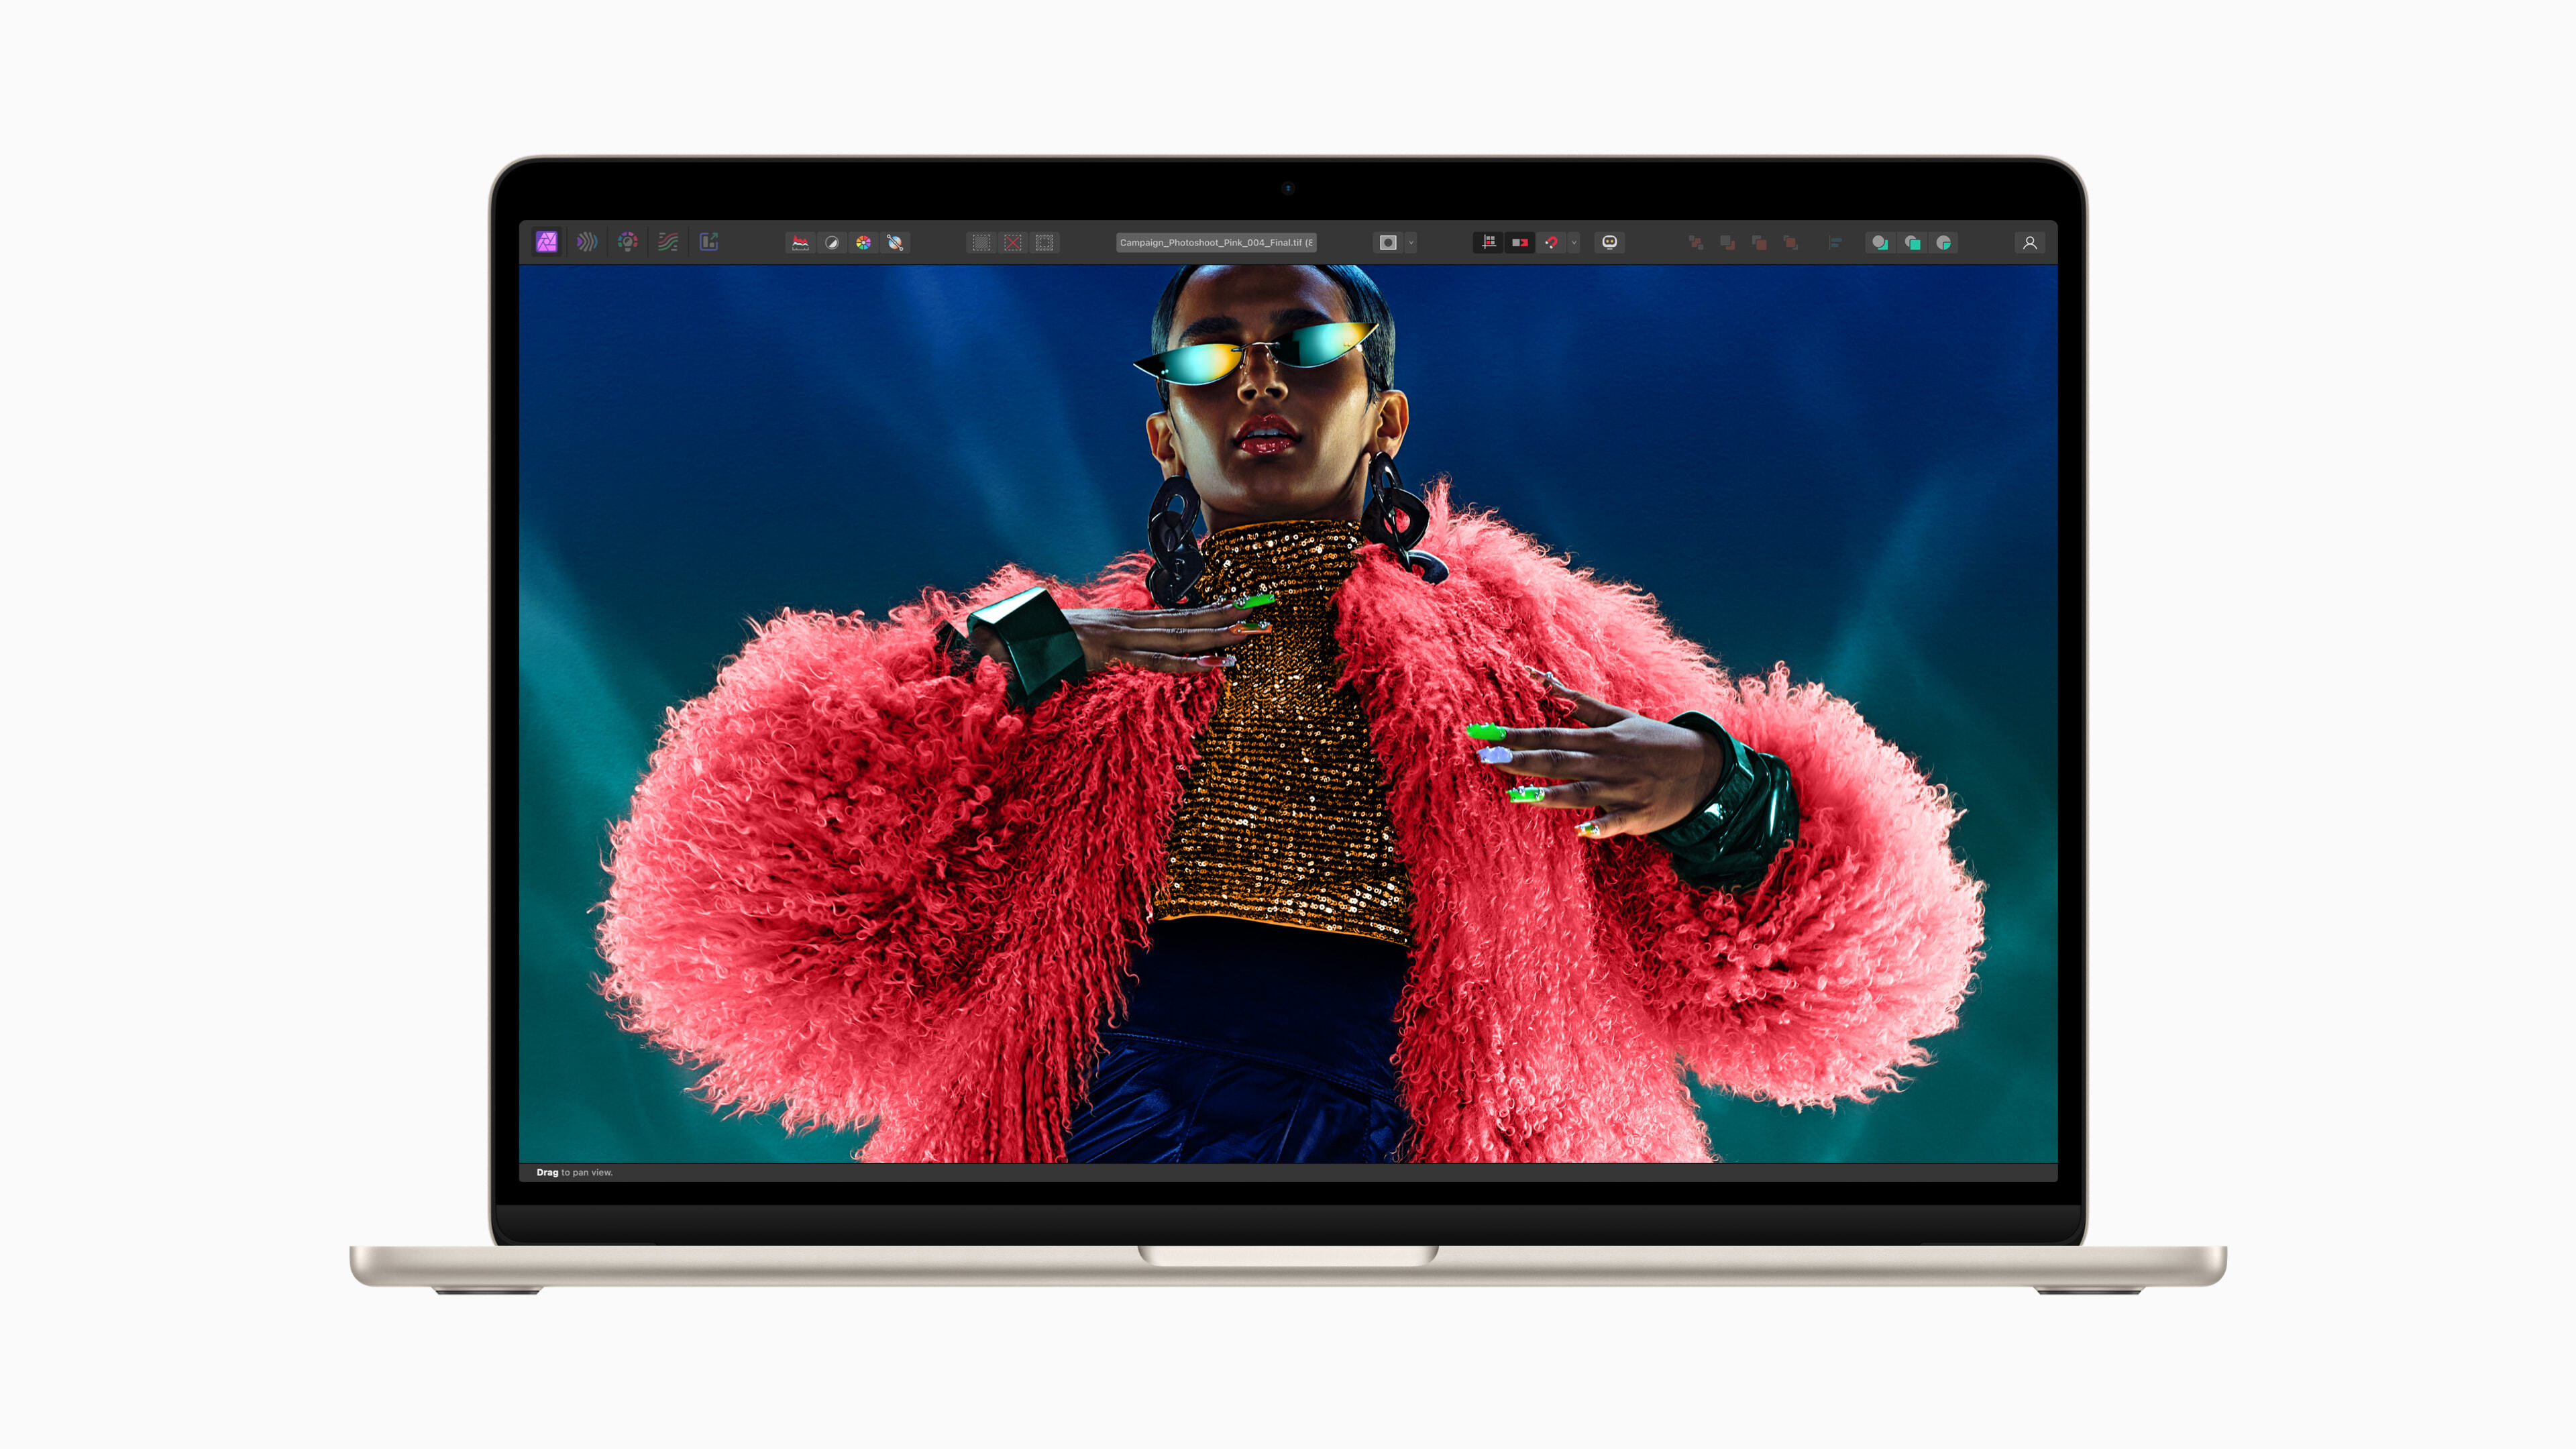 配備 M3 的 MacBook Air 具備絢麗的 Liquid Retina 顯示器，讓照片和影片看起來格外鮮活生動。